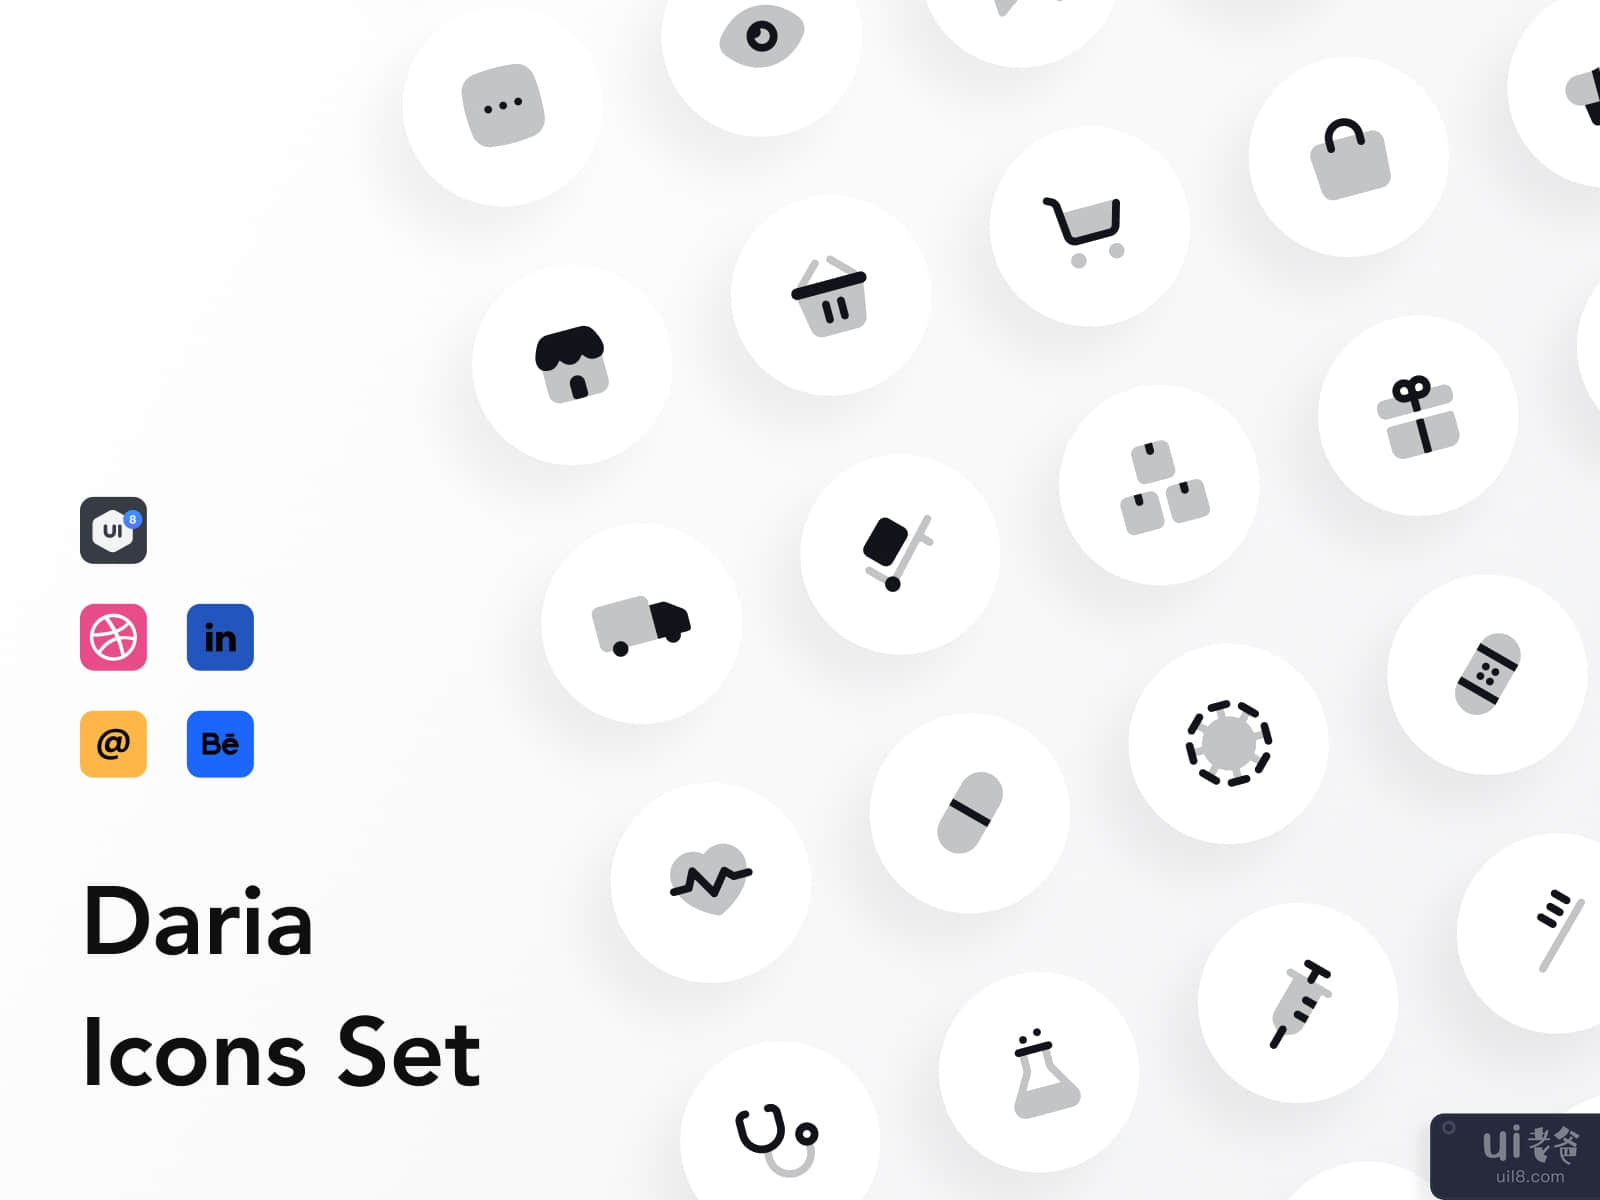 Daria Icons Topic Set